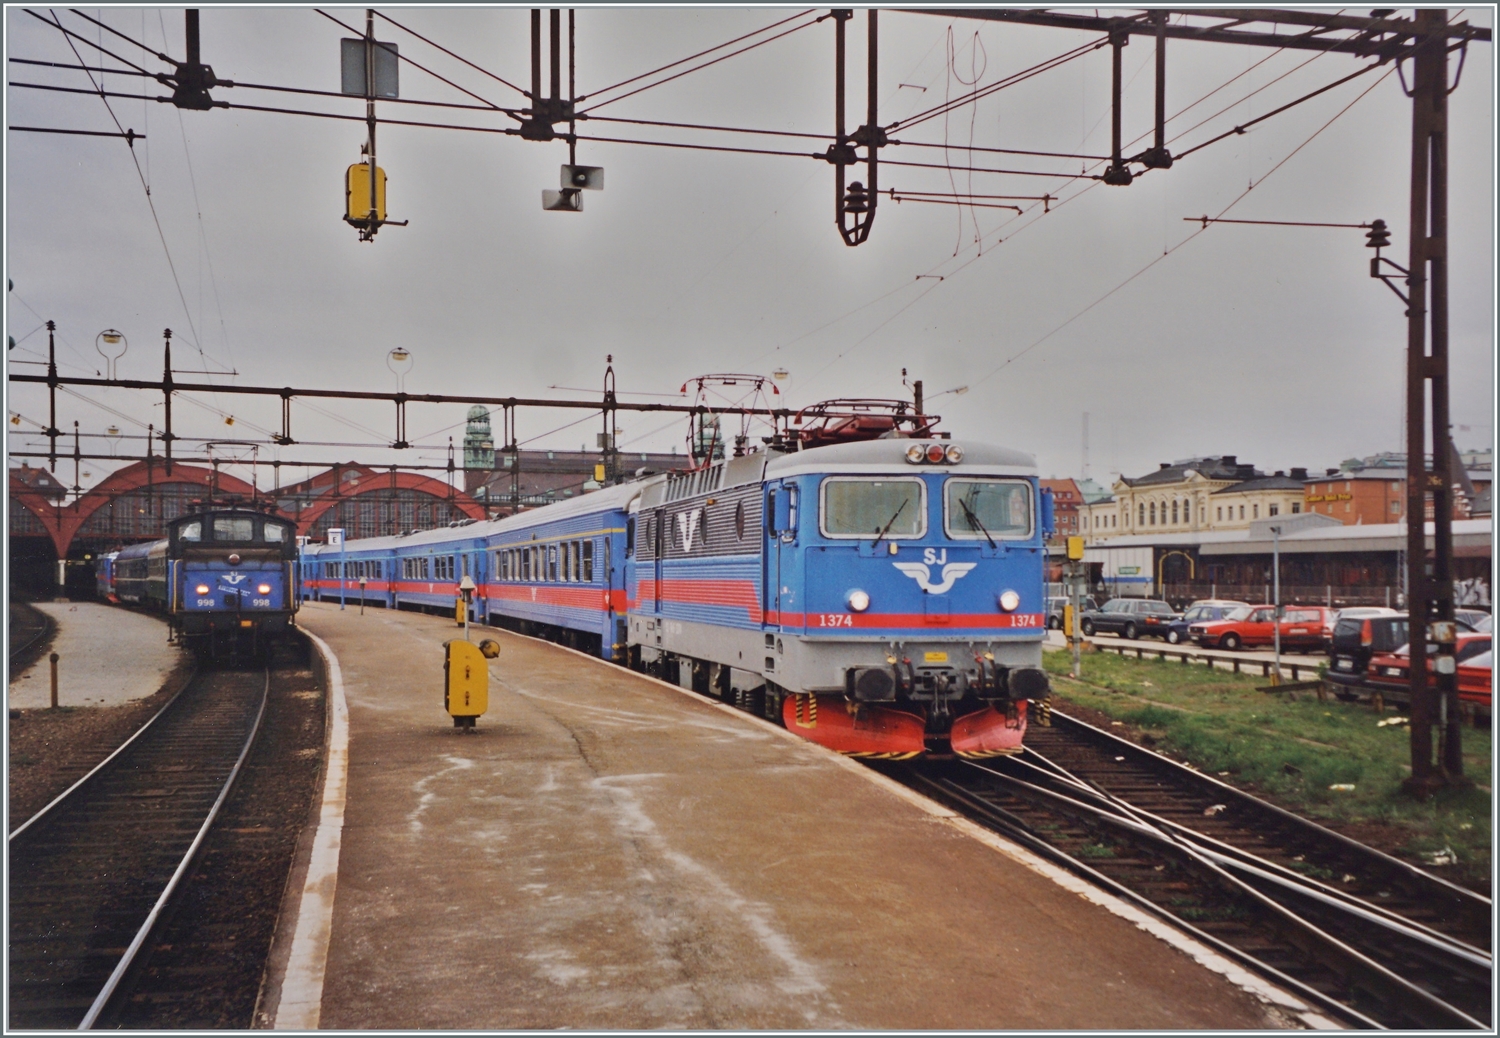 Die SJ Rc6 1374 verlässt mit einem Reisezug Malmö C, während im Hintergrund sich die SJ Ue 998 um den angekommenen D 318  Nils Holgersson  von Berlin kümmert.

Analogbild vom 30. April 1999